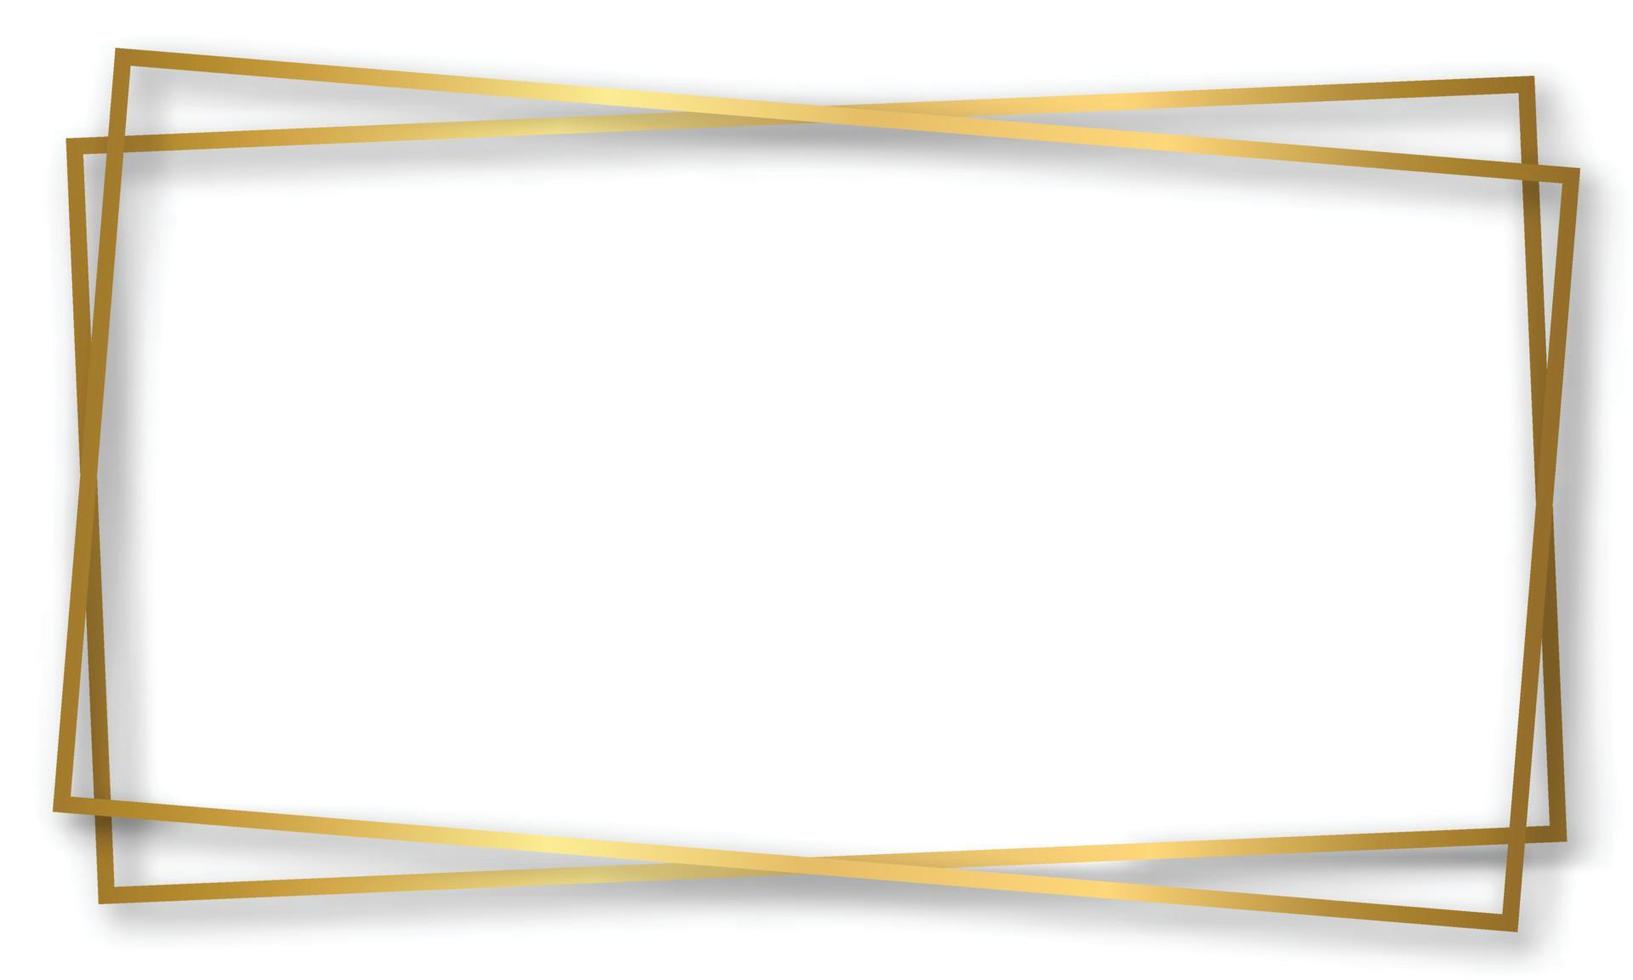 marco vintage brillante dorado brillante con fondo transparente aislado de sombras. borde de rectángulo realista de lujo dorado. ilustración vectorial vector